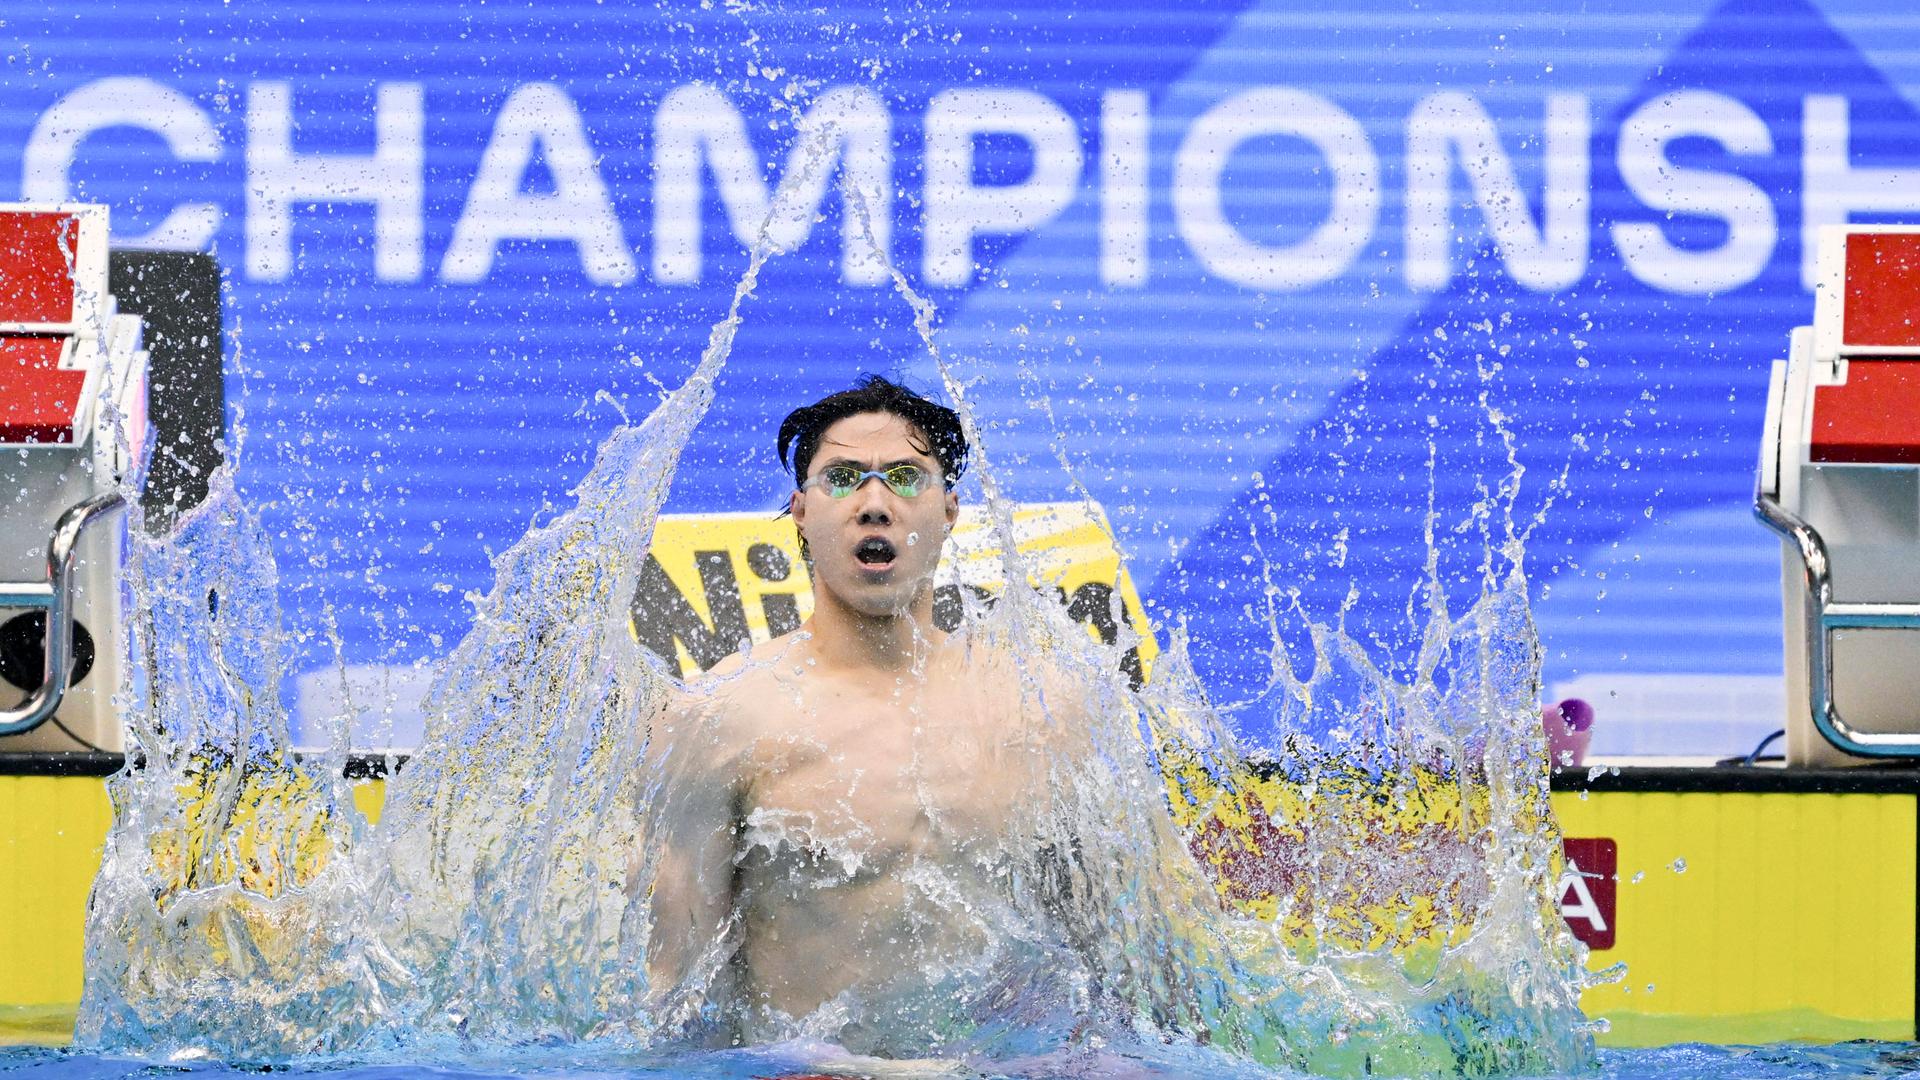 Weltmeister Qin Haiyang nach seinem WM-TItel über 200 Meter Brust, steht unter Dopingverdacht.